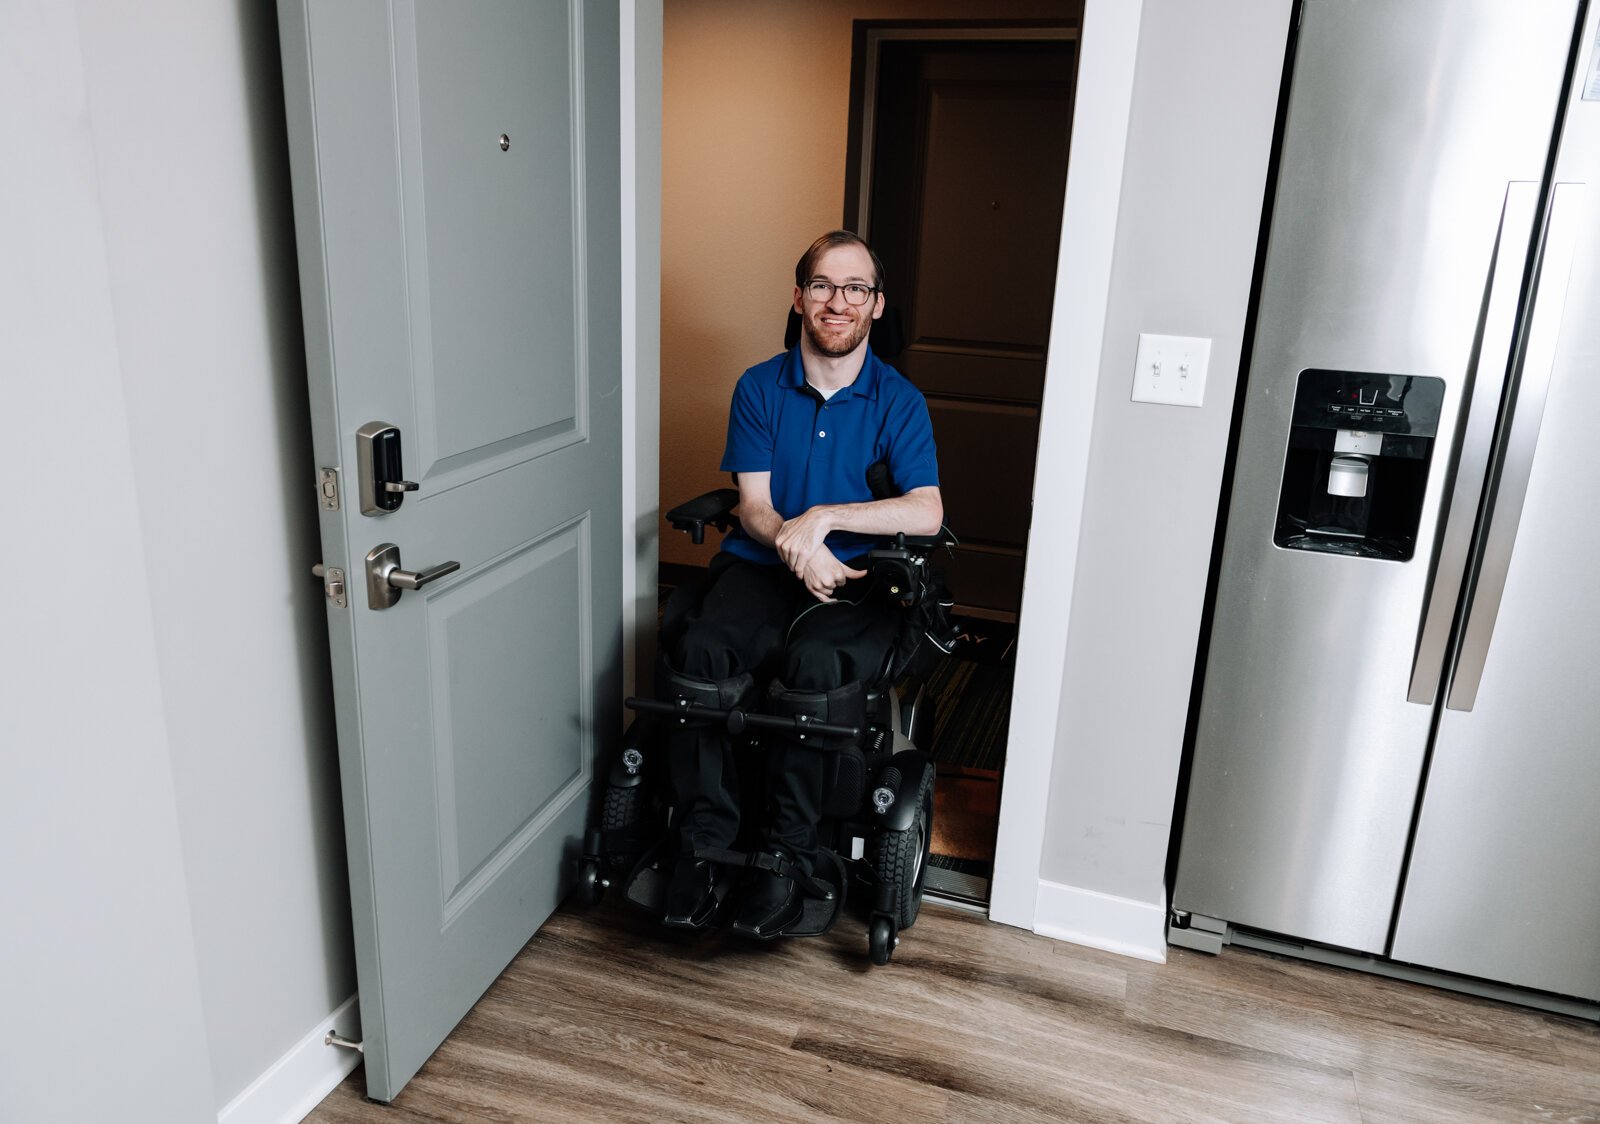 Luke Labas' front door is accessible in his apartment.